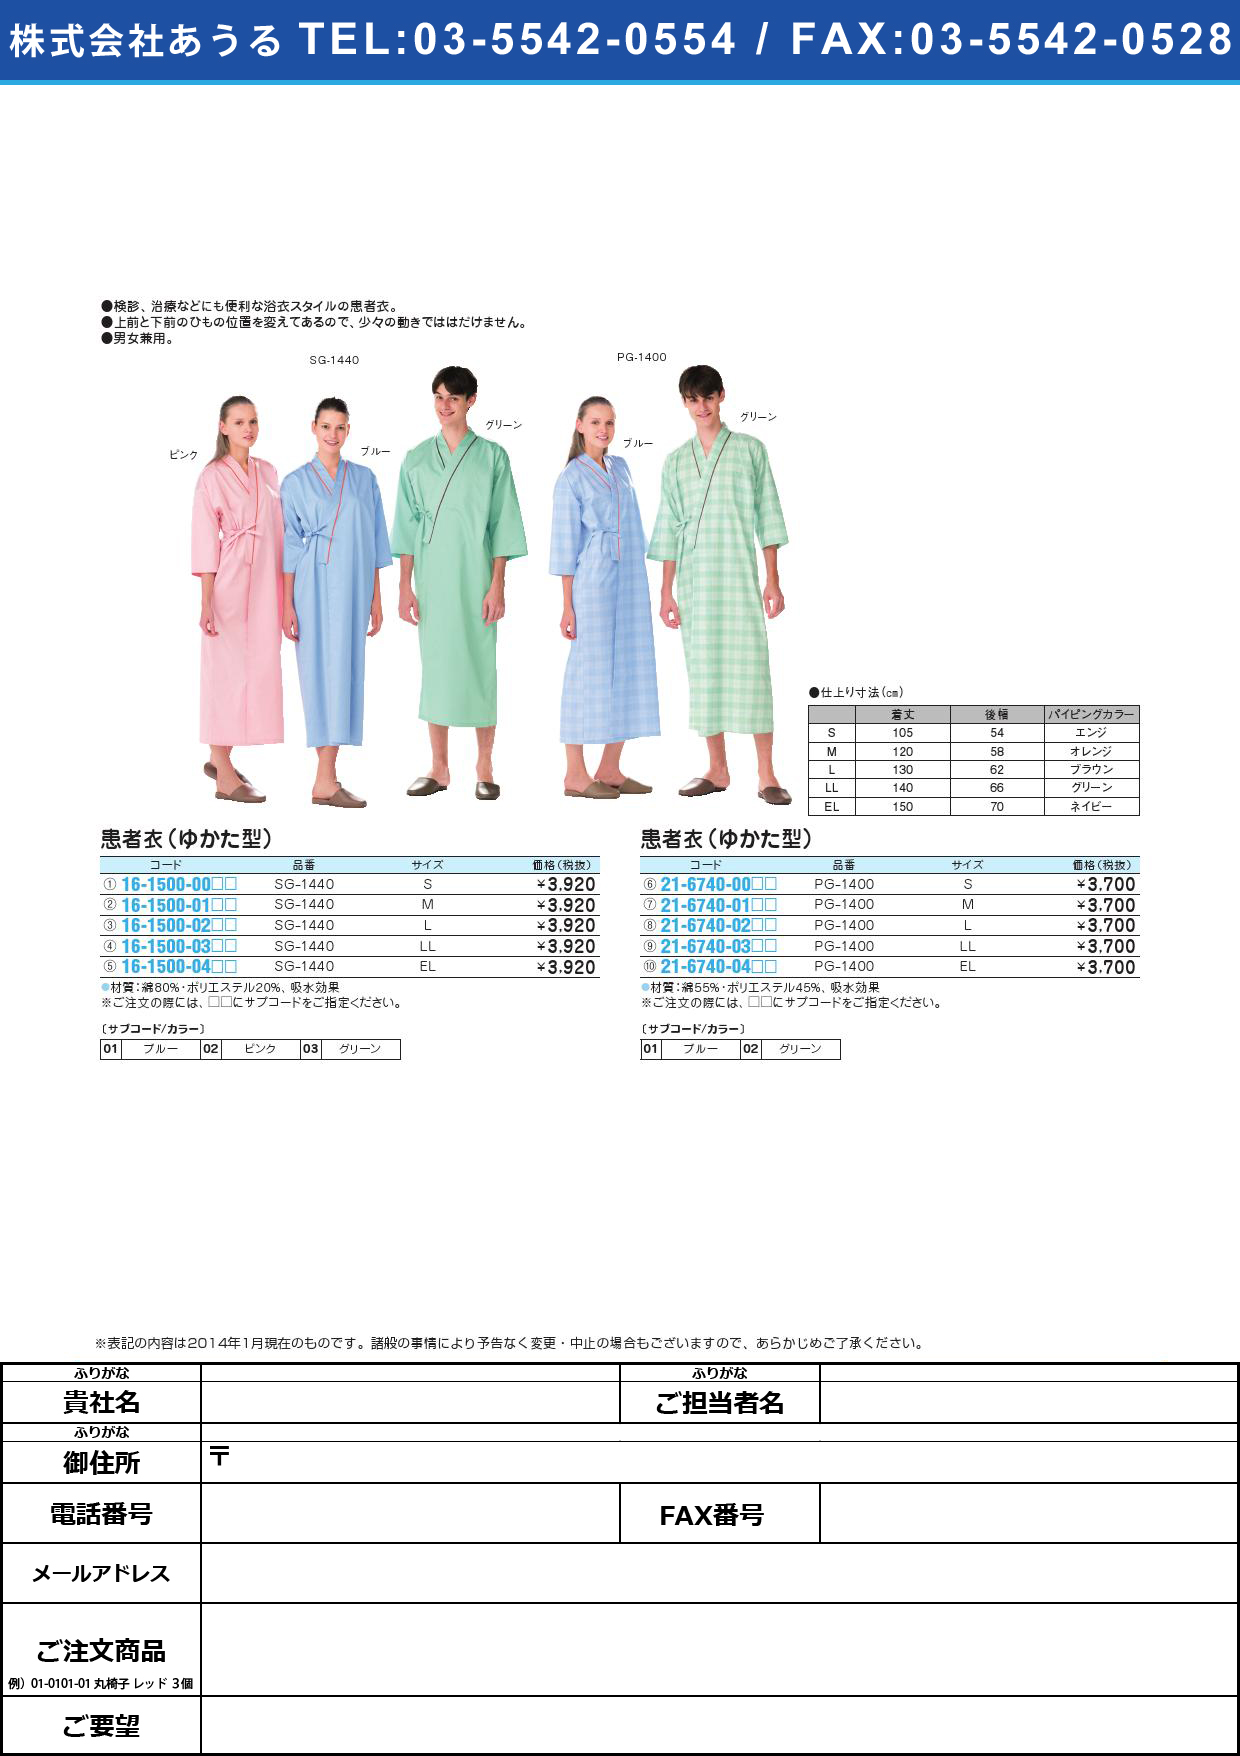 患者衣ゆかた型 ｶﾝｼﾞｬｲﾕｶﾀｶﾞﾀ(16-1500-04)SG-1440(EL)ブルー【1枚単位】